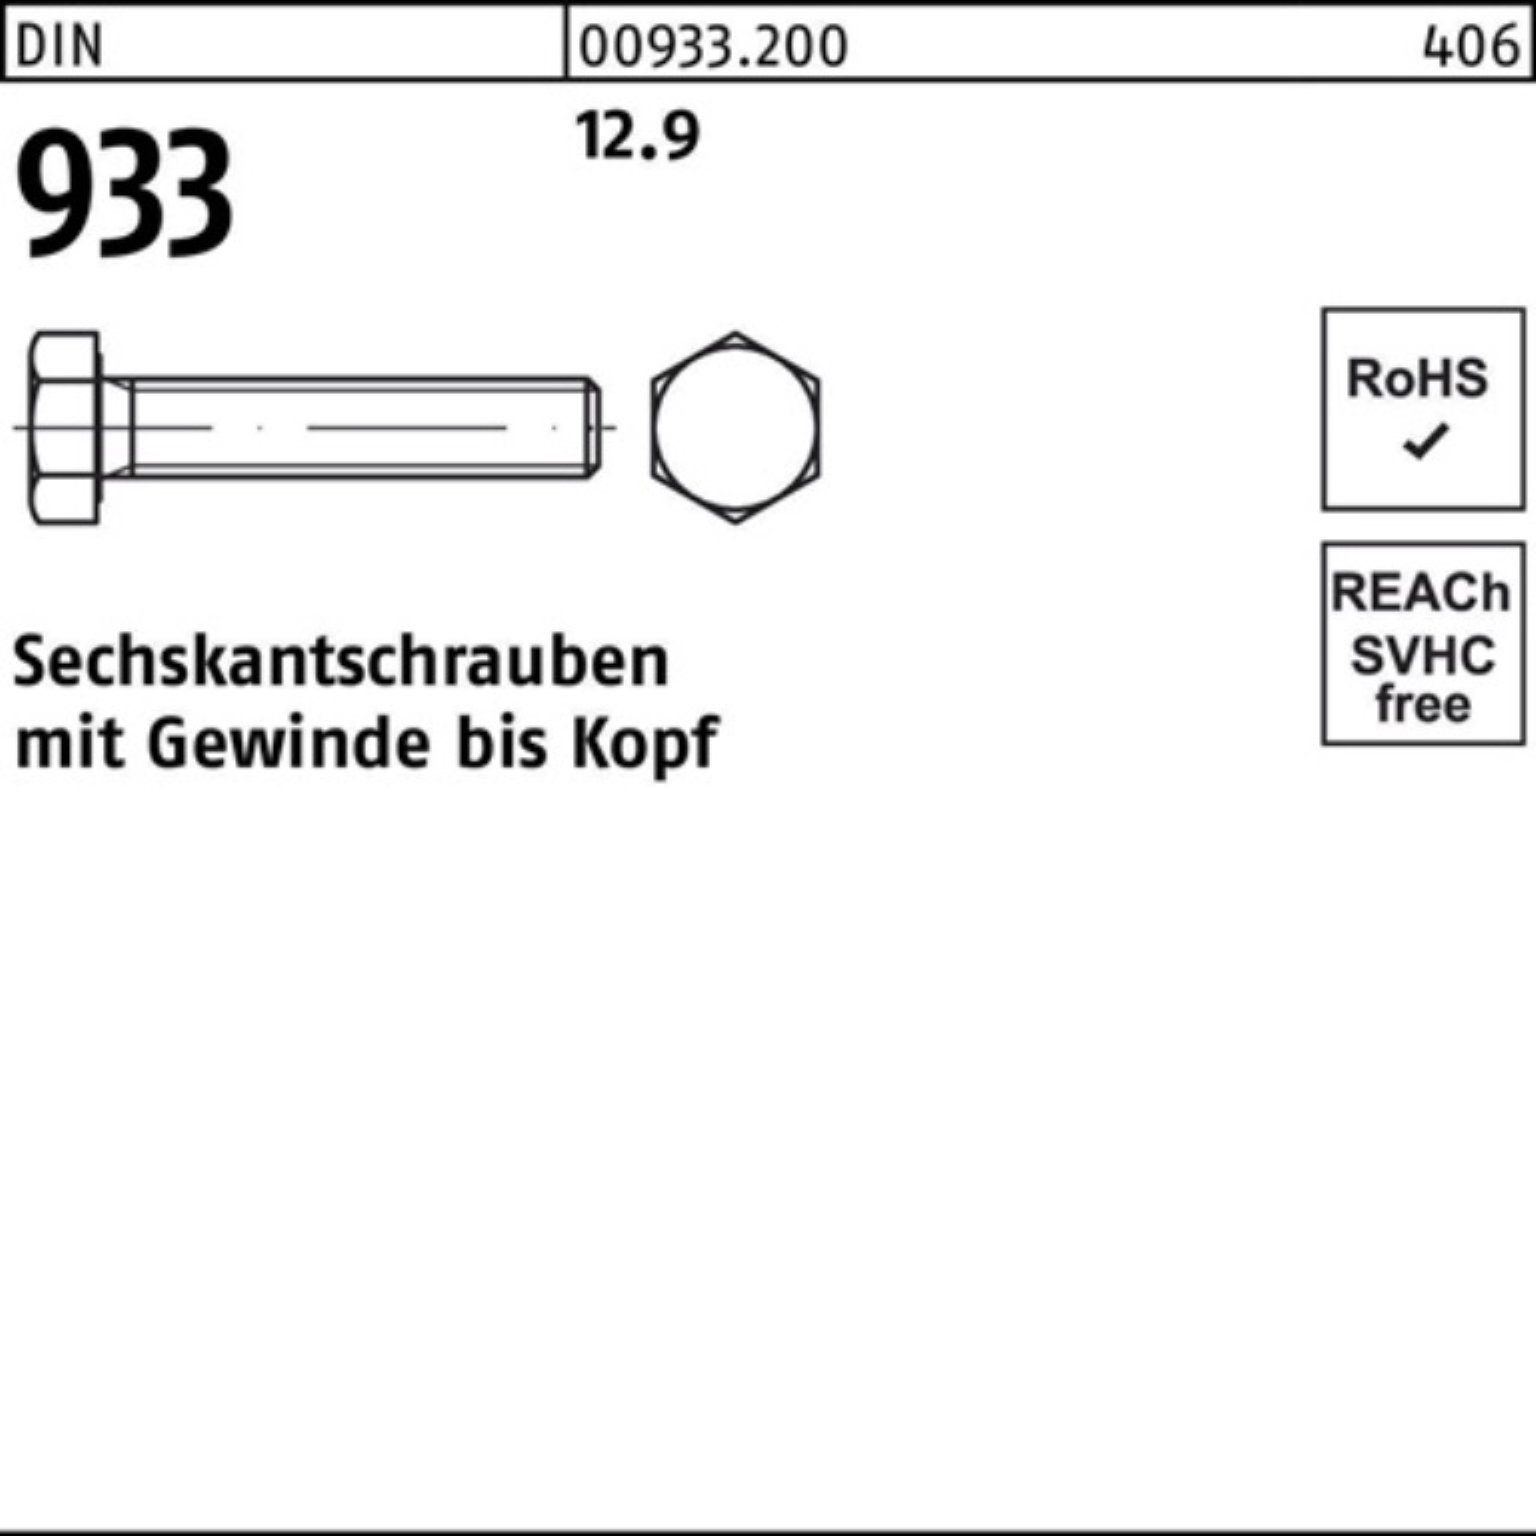 Reyher Sechskantschraube 200er Pack VG Stück 933 DIN 12.9 40 200 933 DIN Sechskantschraube M8x